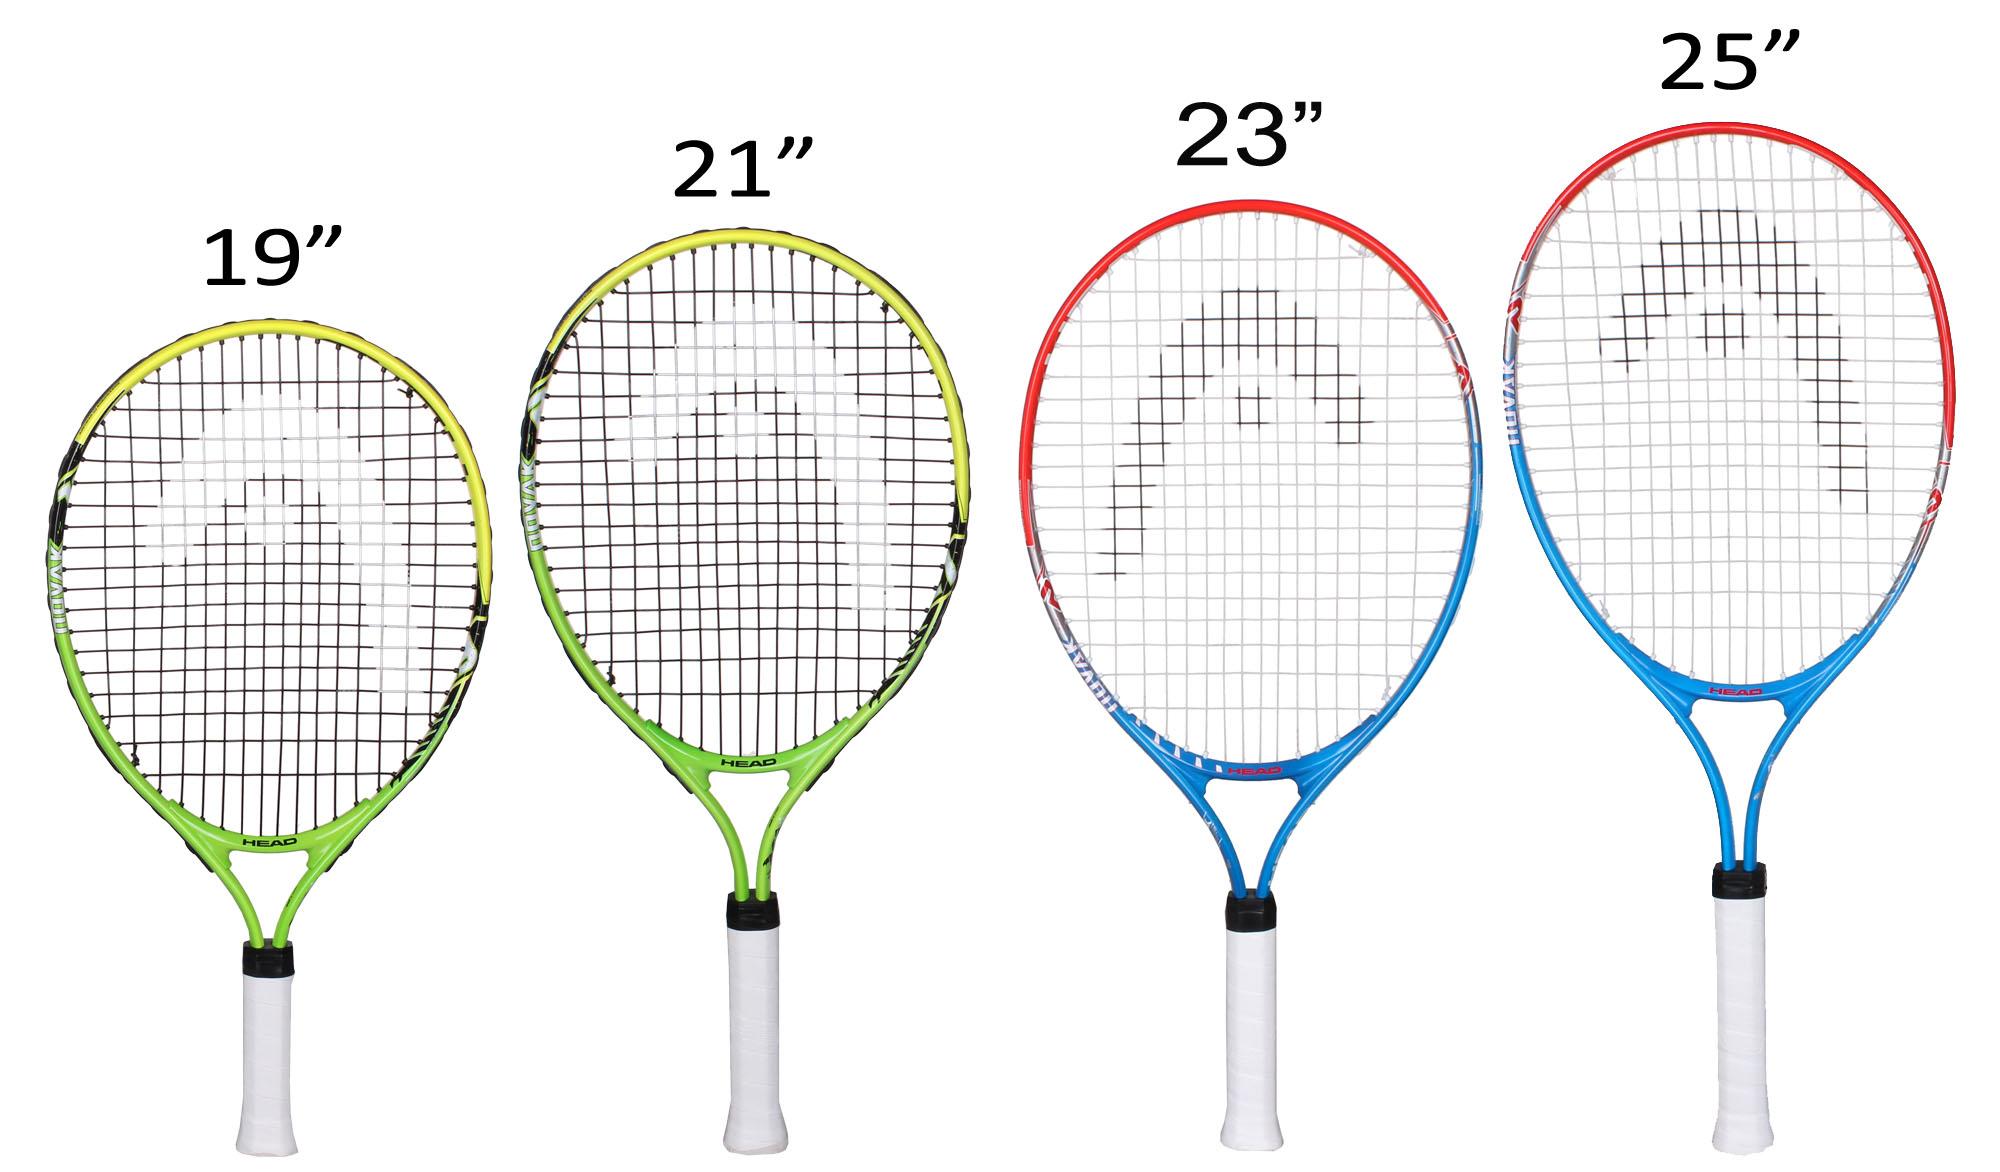 Таблица большого тенниса. Размеры теннисной ракетки для большого тенниса 23. Ракетка для большого тенниса Размеры 26. Размер ручки ракетки для большого тенниса 3 7/8. Ракетка для большого тенниса head таблица размеров.